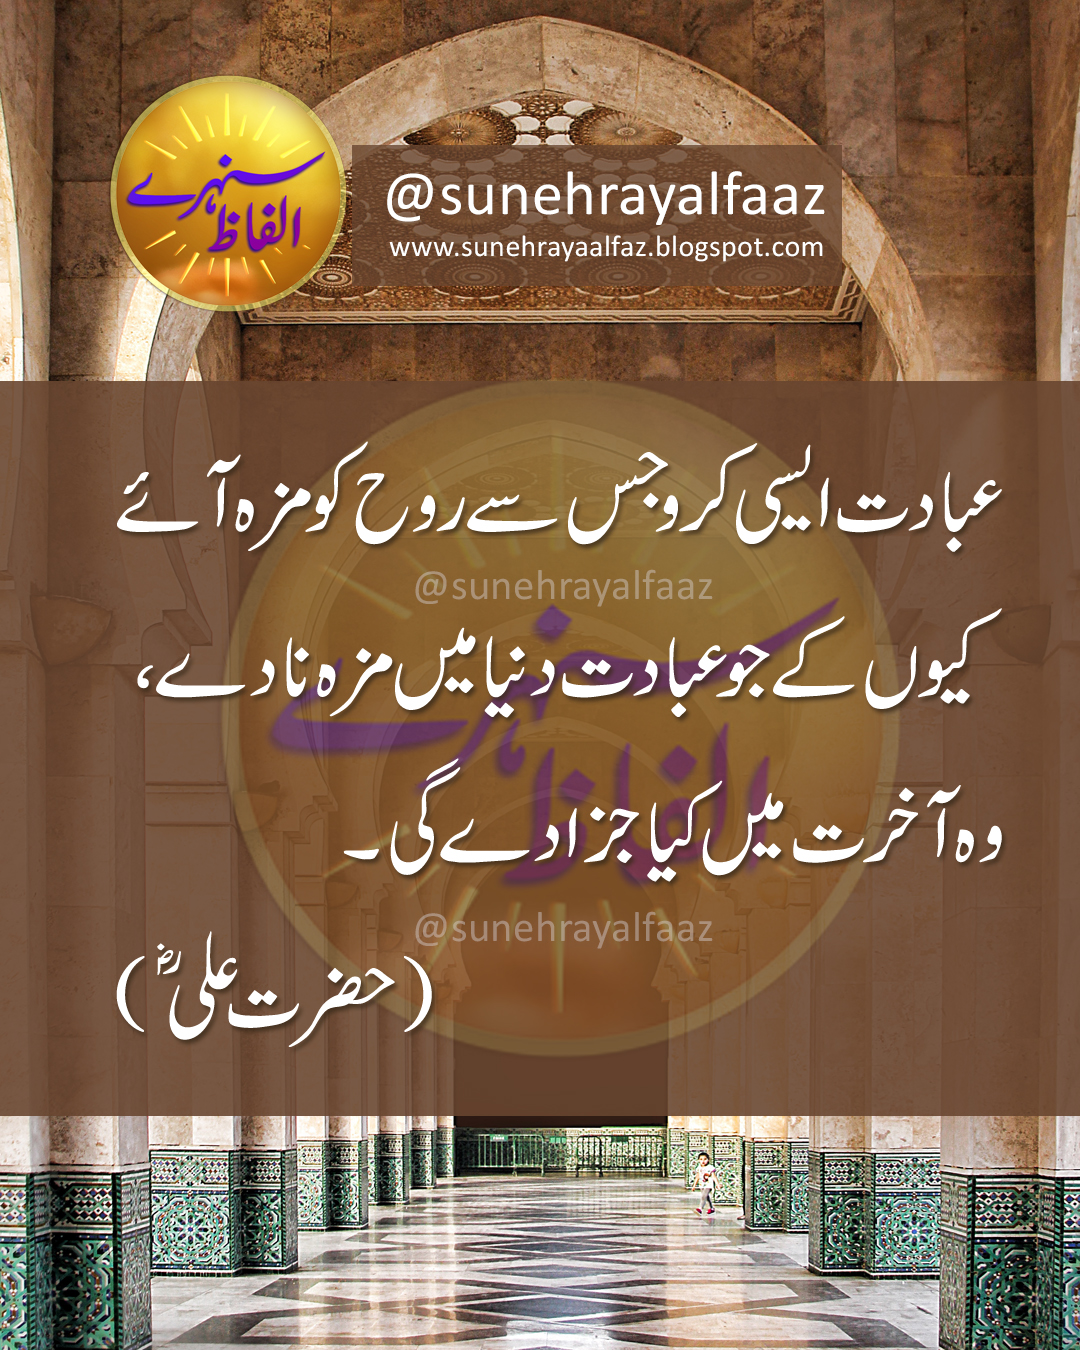 Jab Insaan Ki Aqal Mukammal Ho Jati Hai L Hazrat Ali Quotes In Urdu L